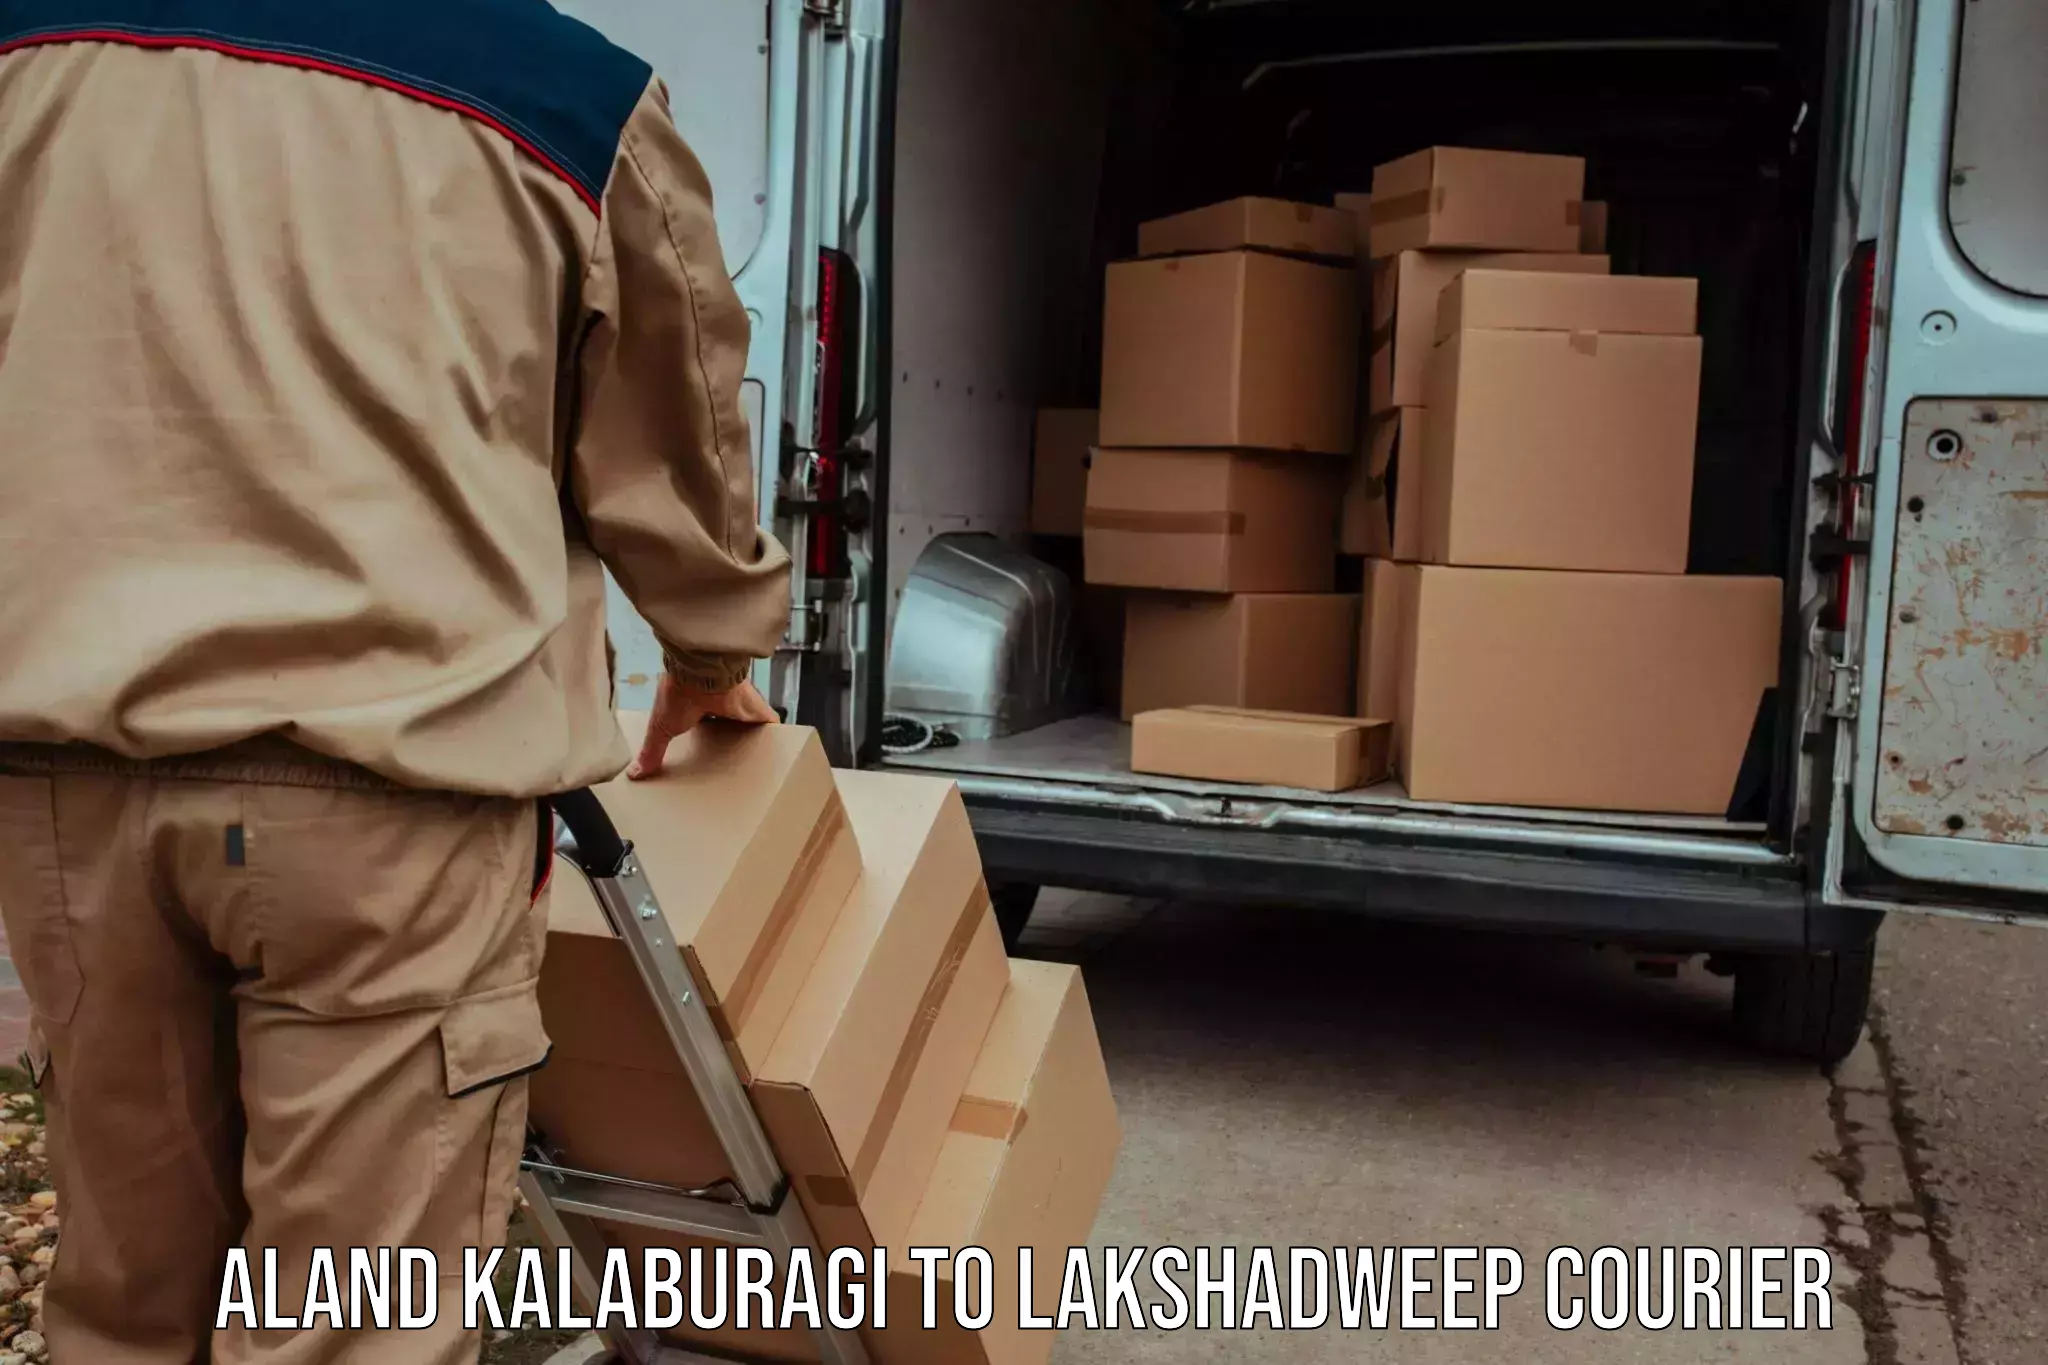 24-hour courier service Aland Kalaburagi to Lakshadweep